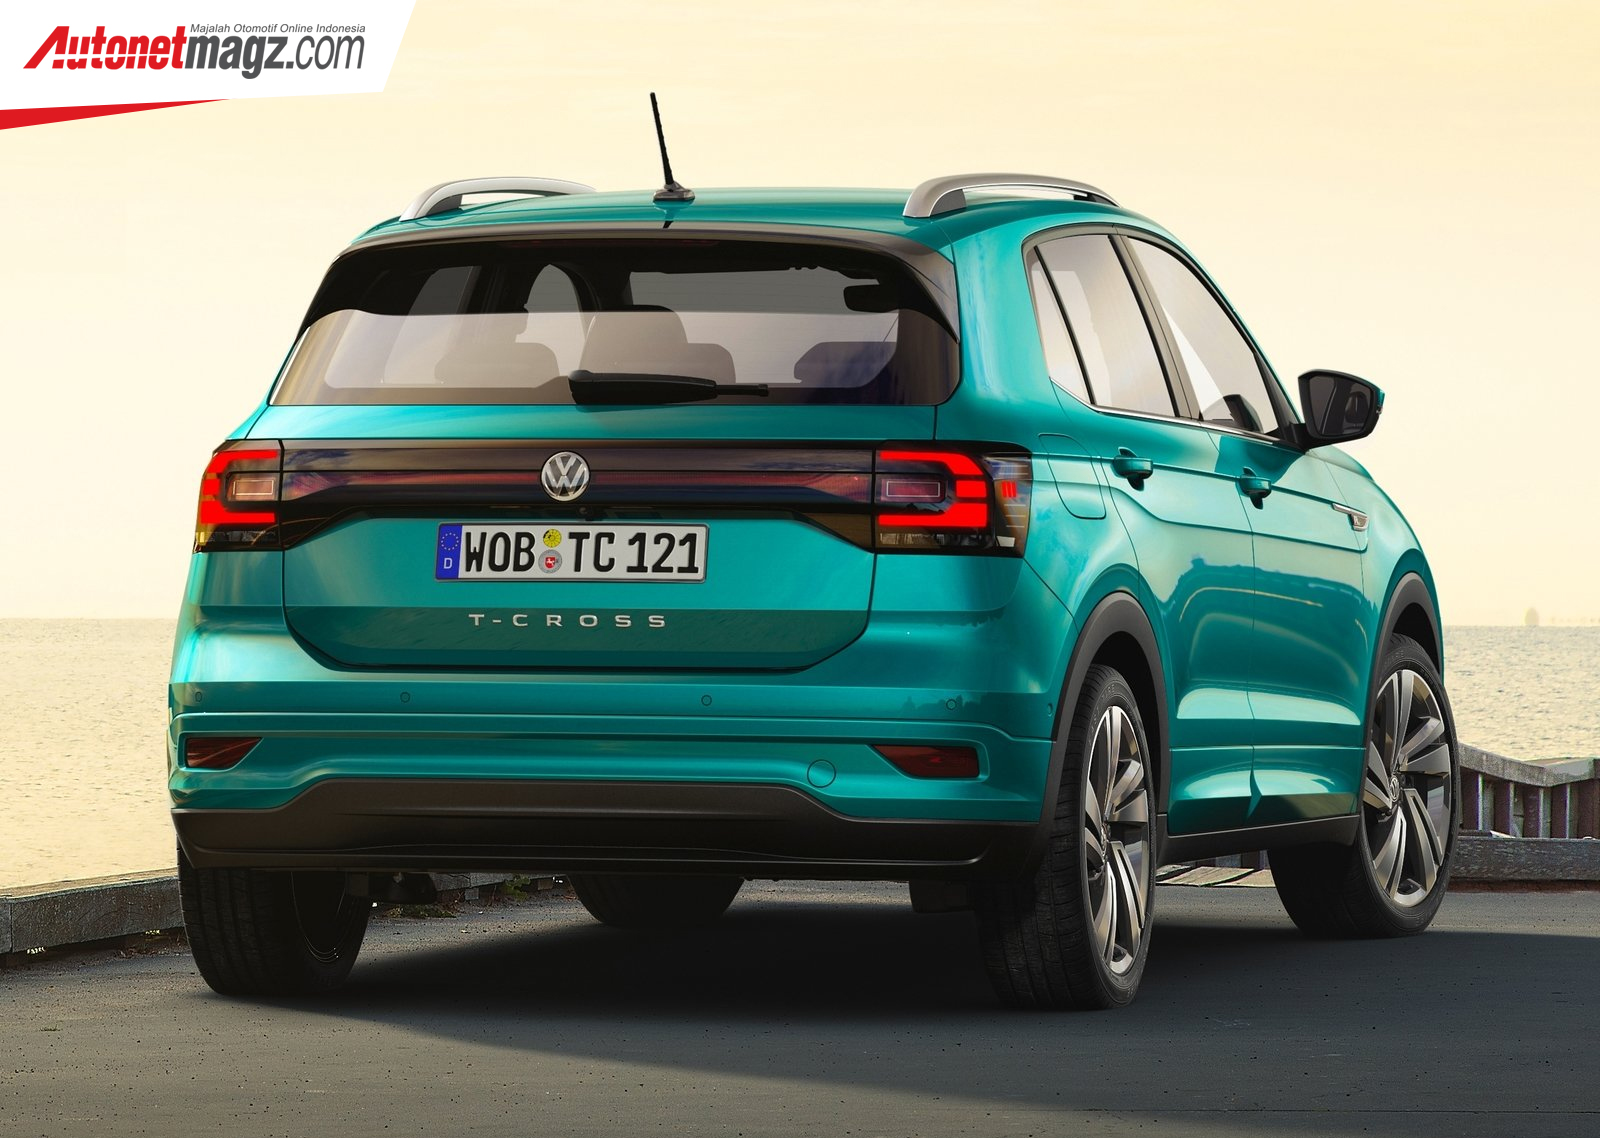 Berita, Harga VW T-Cross: Mobil Kaya Fitur, All New VW T-Cross Sampai di Spanyol